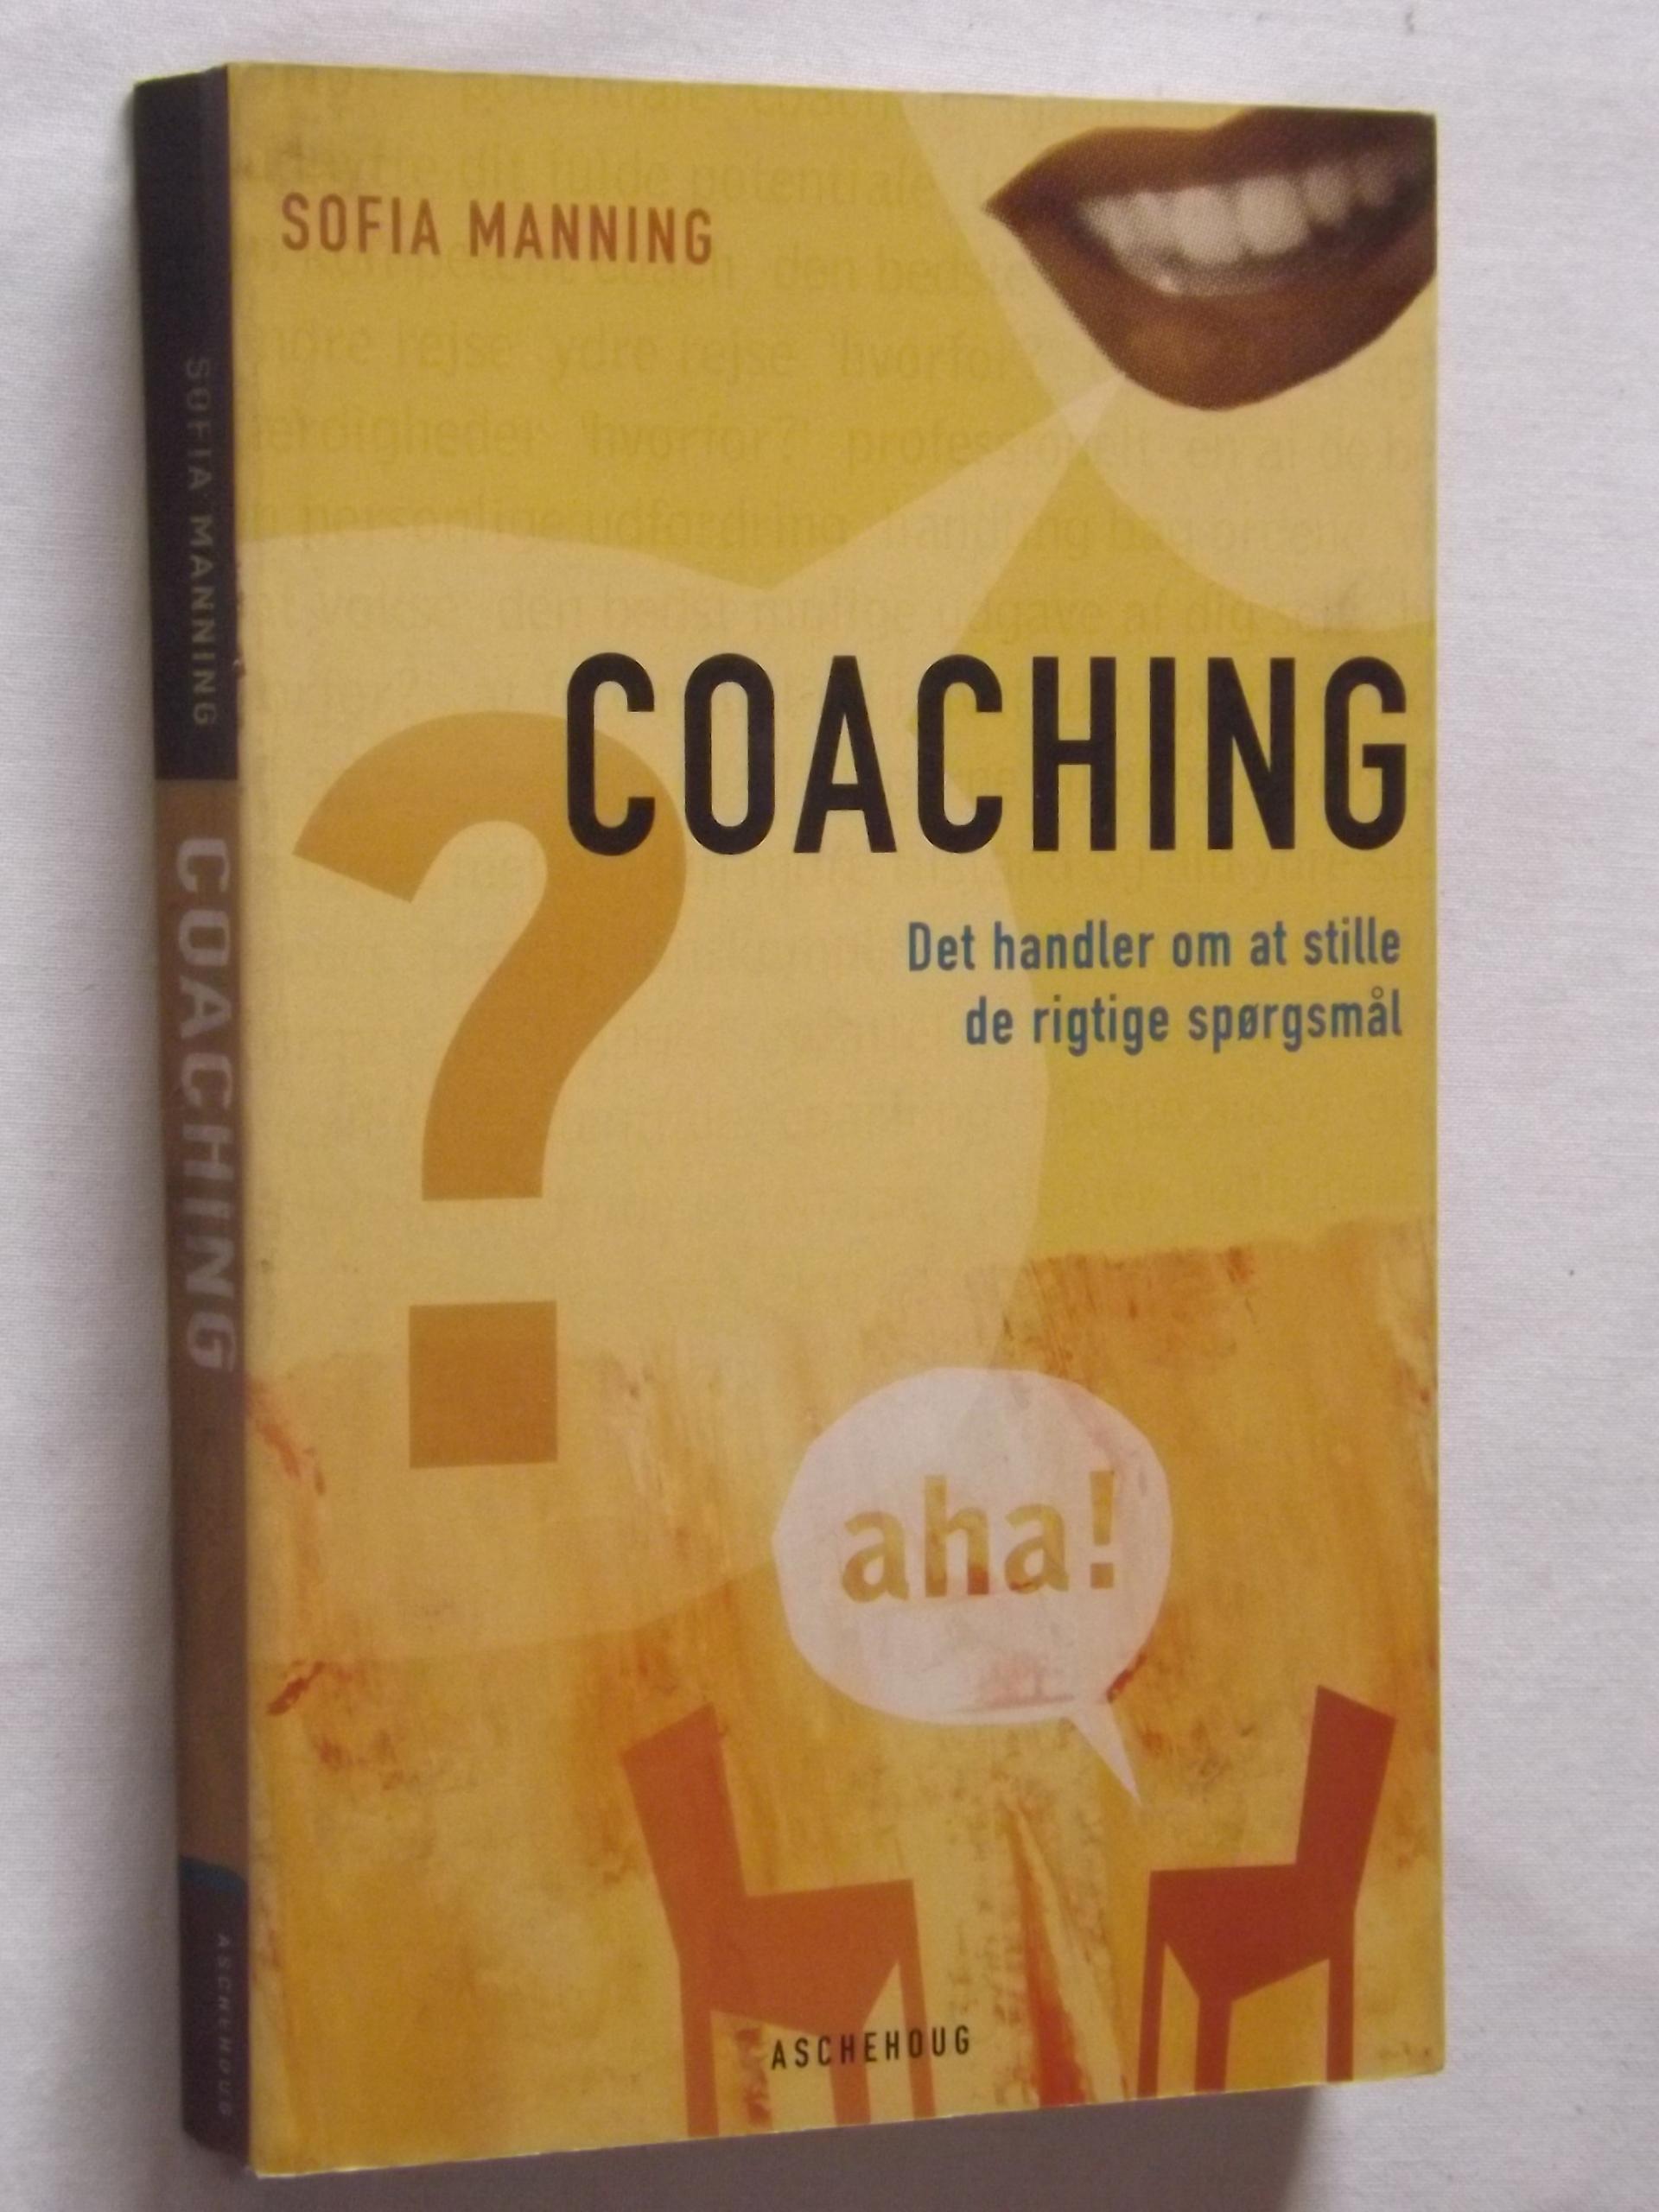 Sofia Manning: Coaching – Det handler om at stille de rigtige spørgsmål – – Brugte bøger til